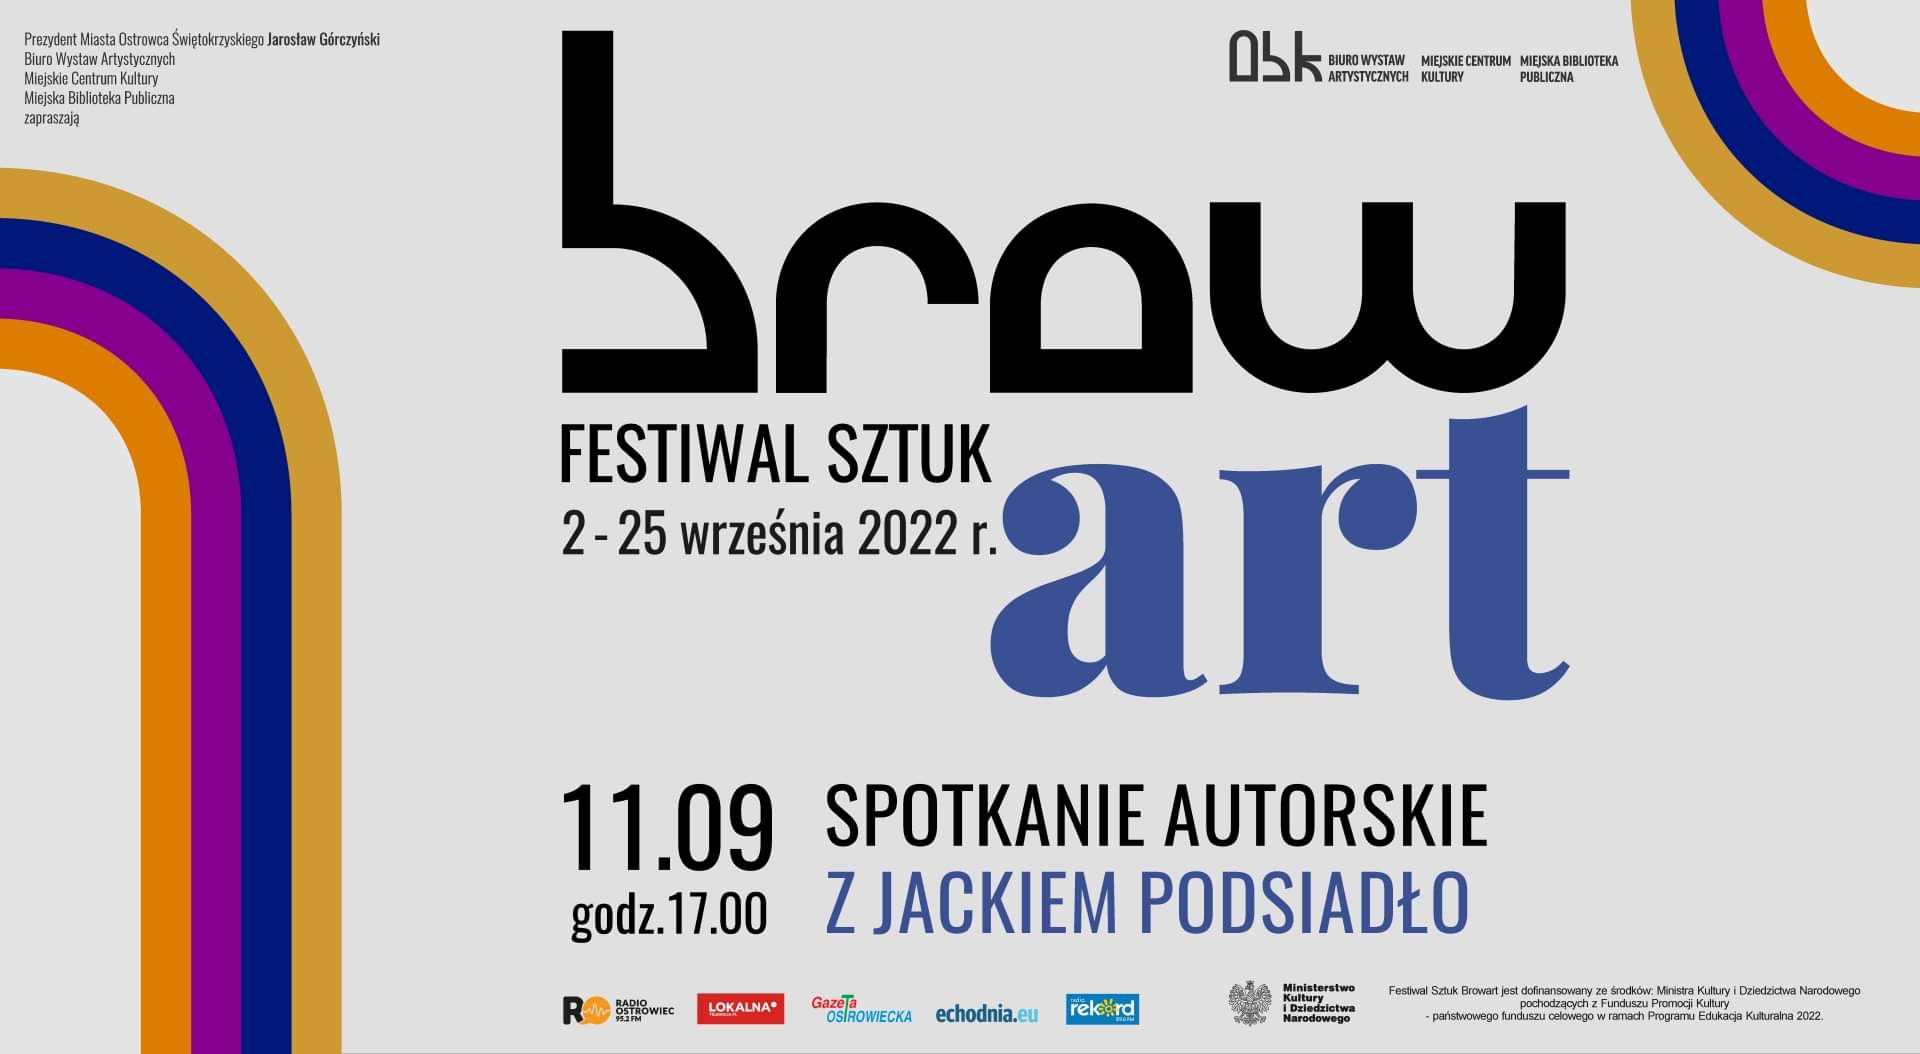 Festiwal Sztuki brow art. 11 września 2022 spotkanie autorskie z Jackiem Podsiadło